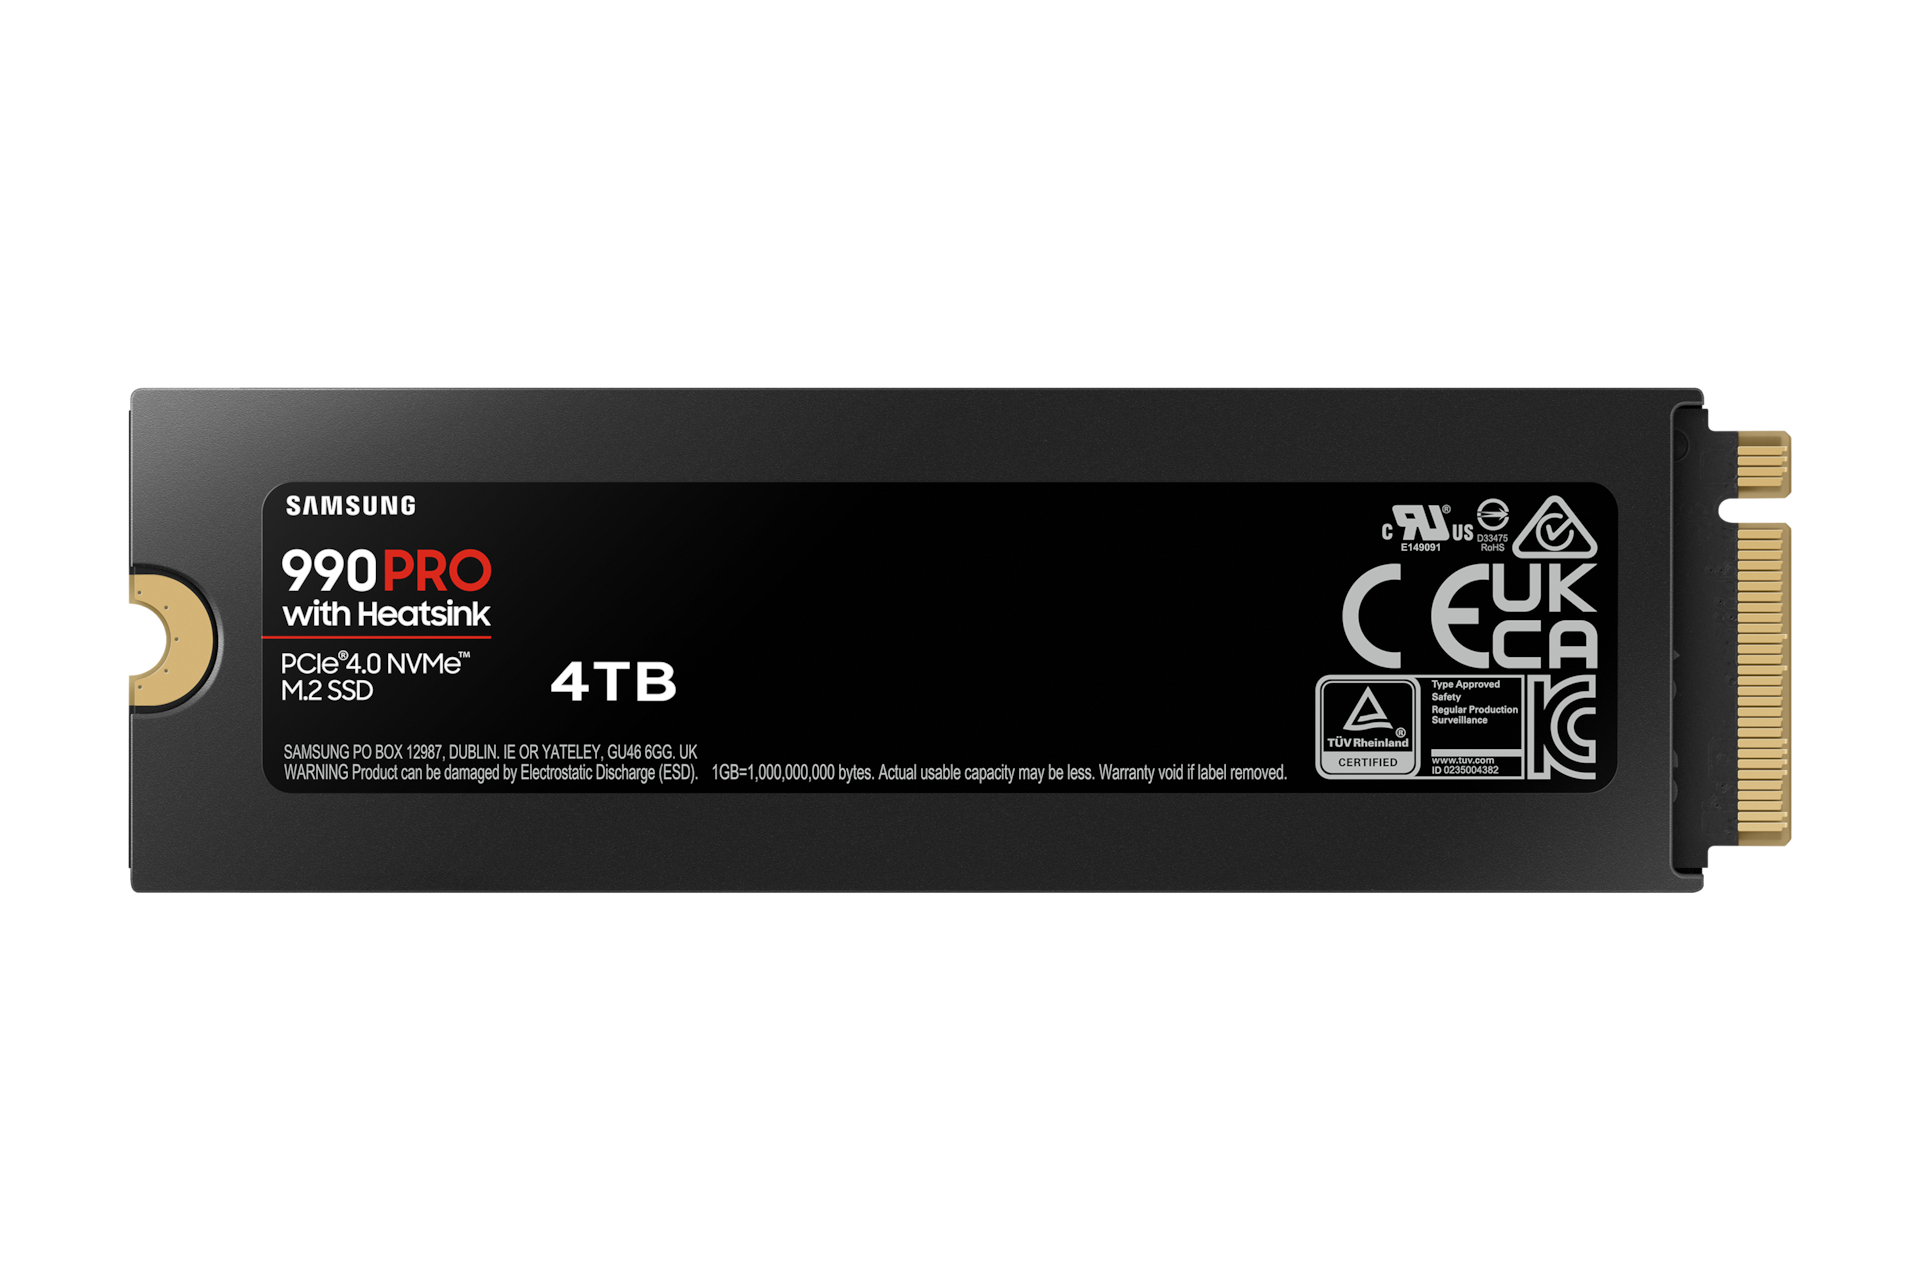 Samsung SSD 990 PRO M.2 PCIe NVMe, performances exceptionnelles et